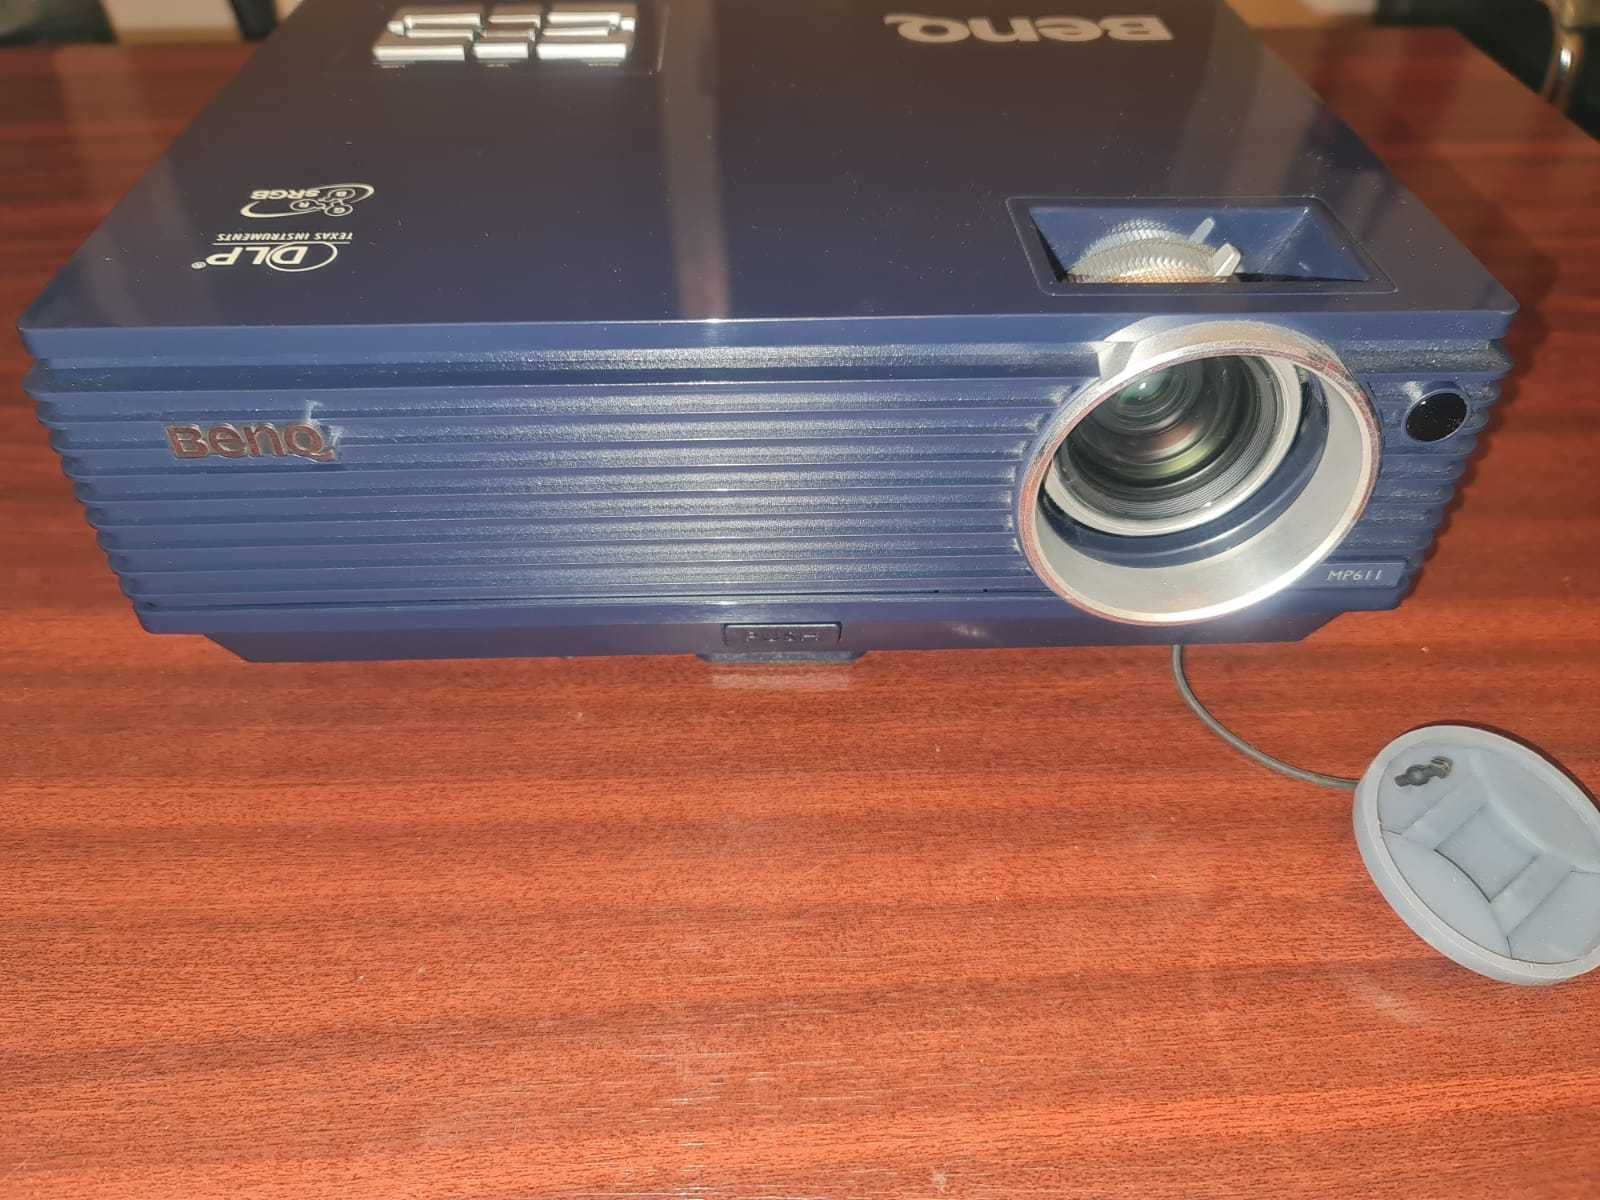 Videoproiector Benq MP611 cu toate accesoriile (Cabluri, telecomanda )